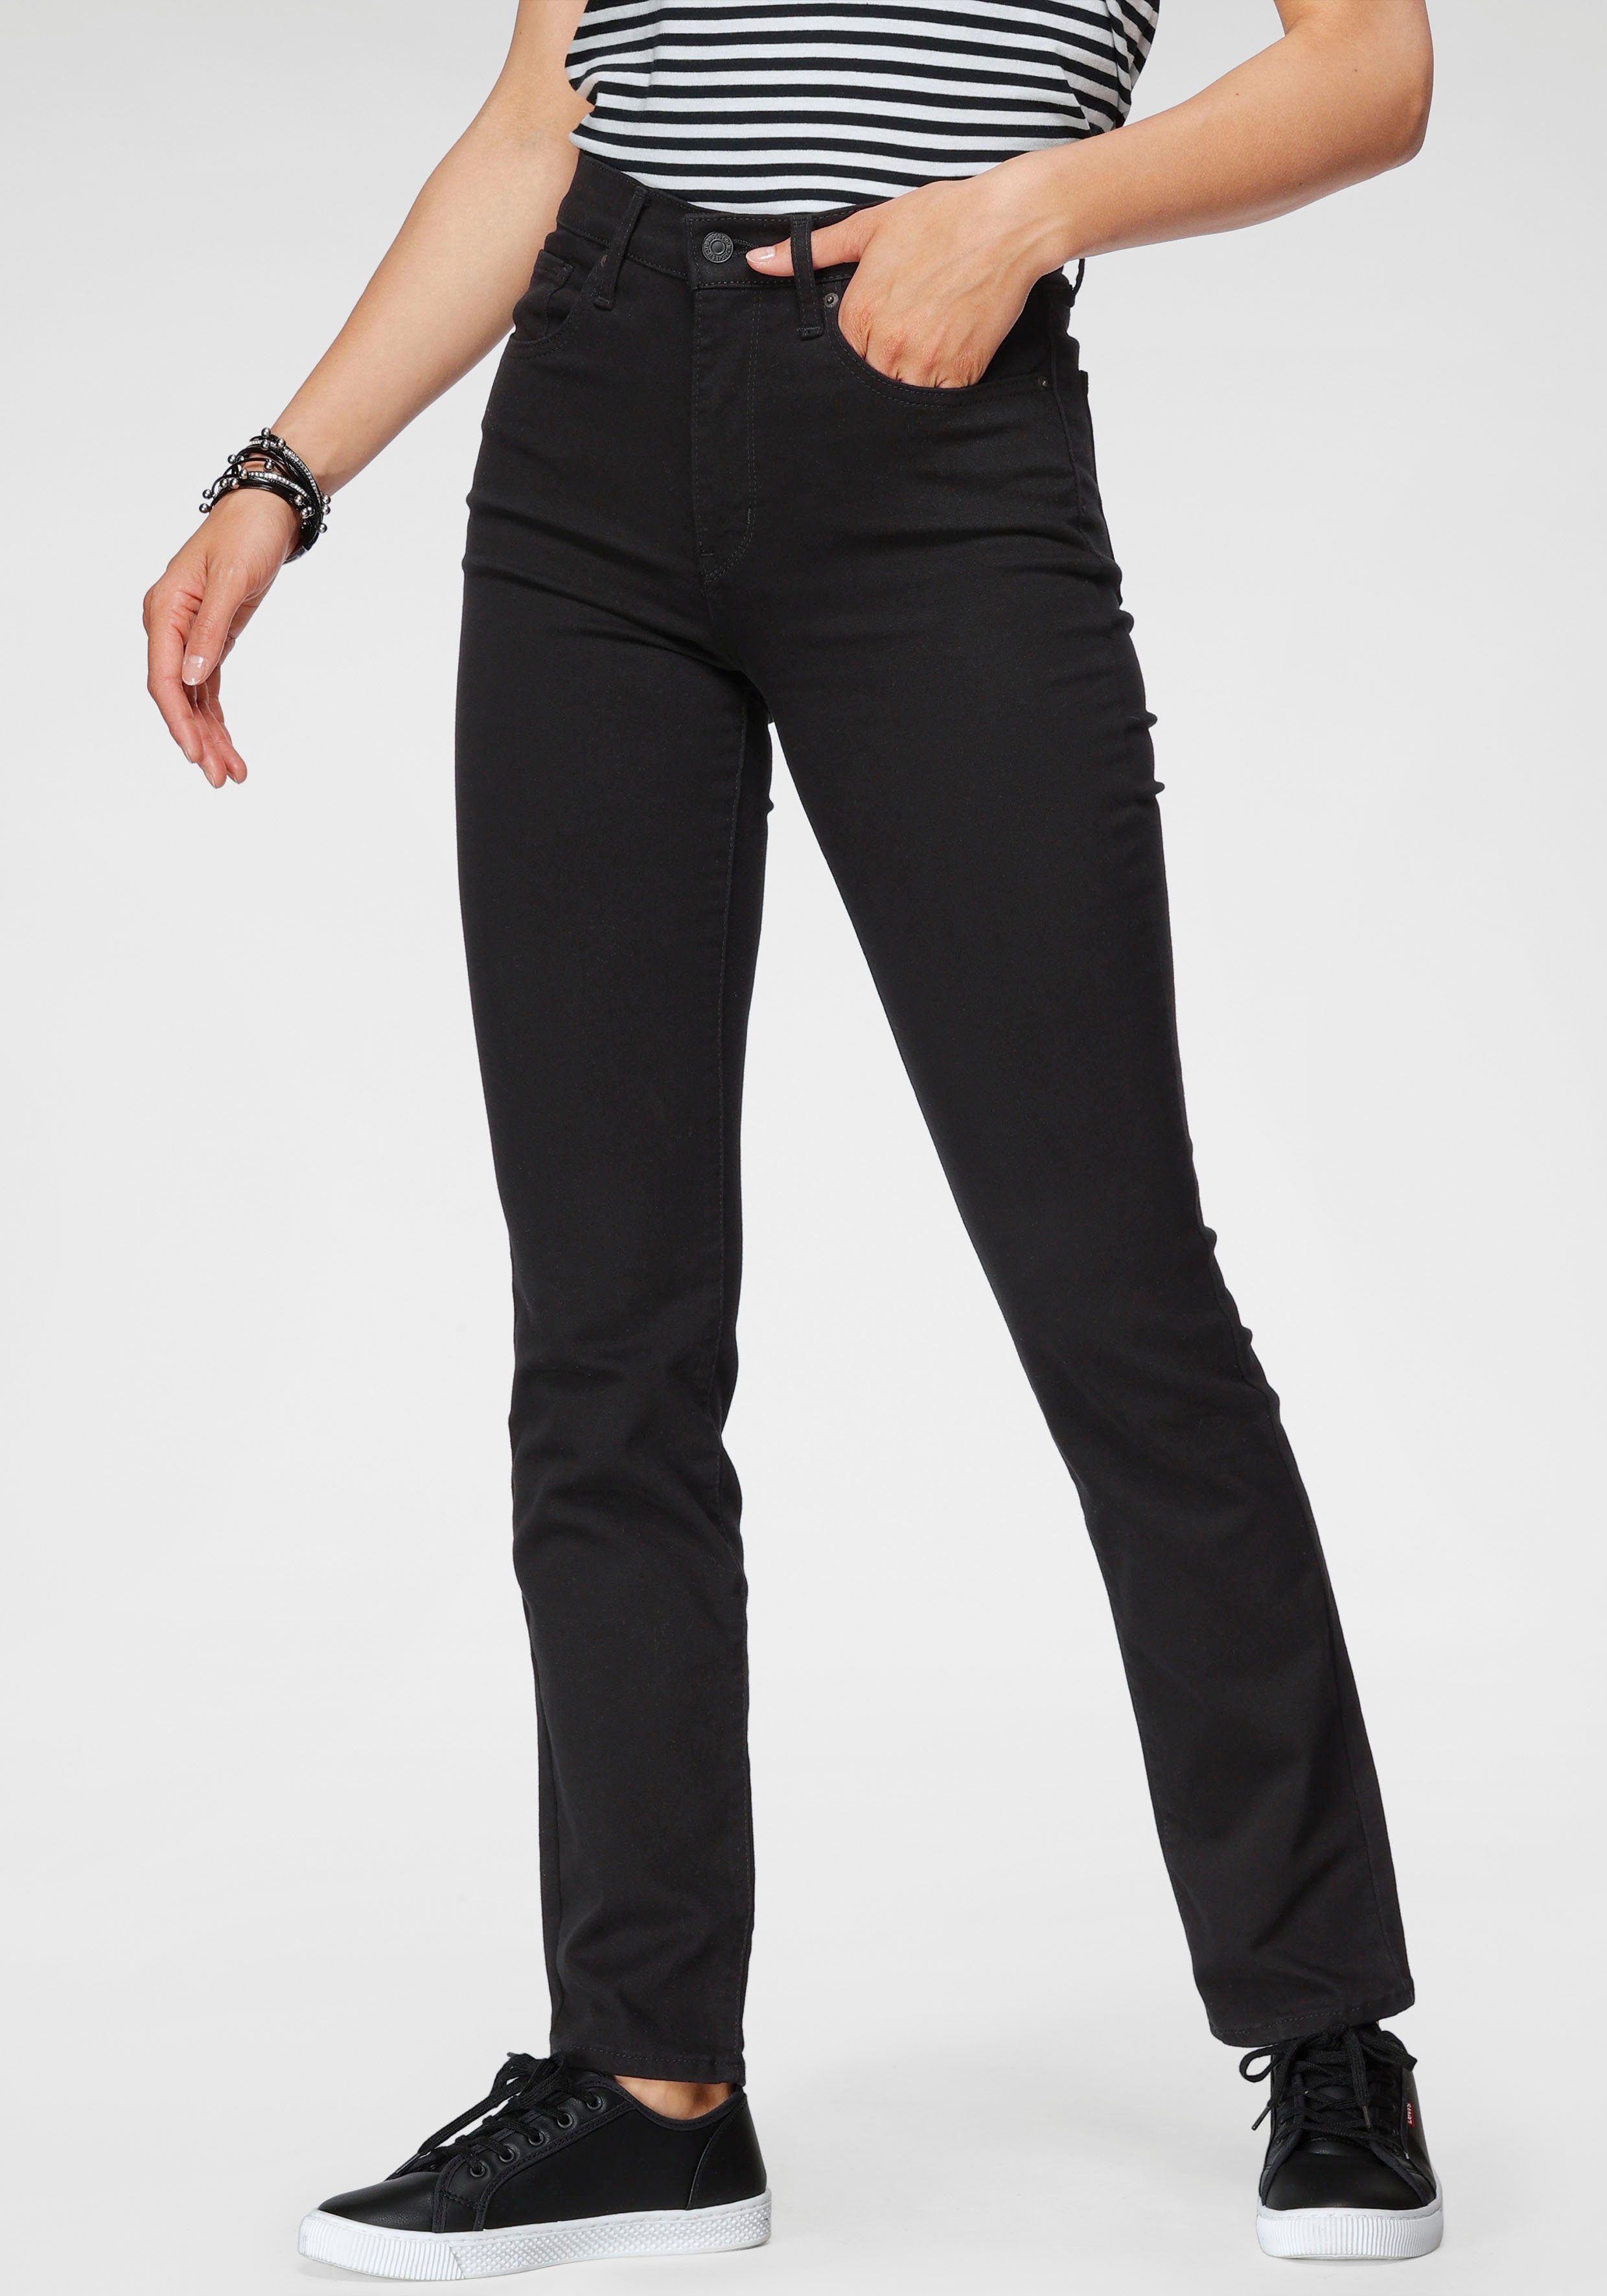 Schwarze Jeans für Damen kaufen » Schwarze Jeanshosen | OTTO